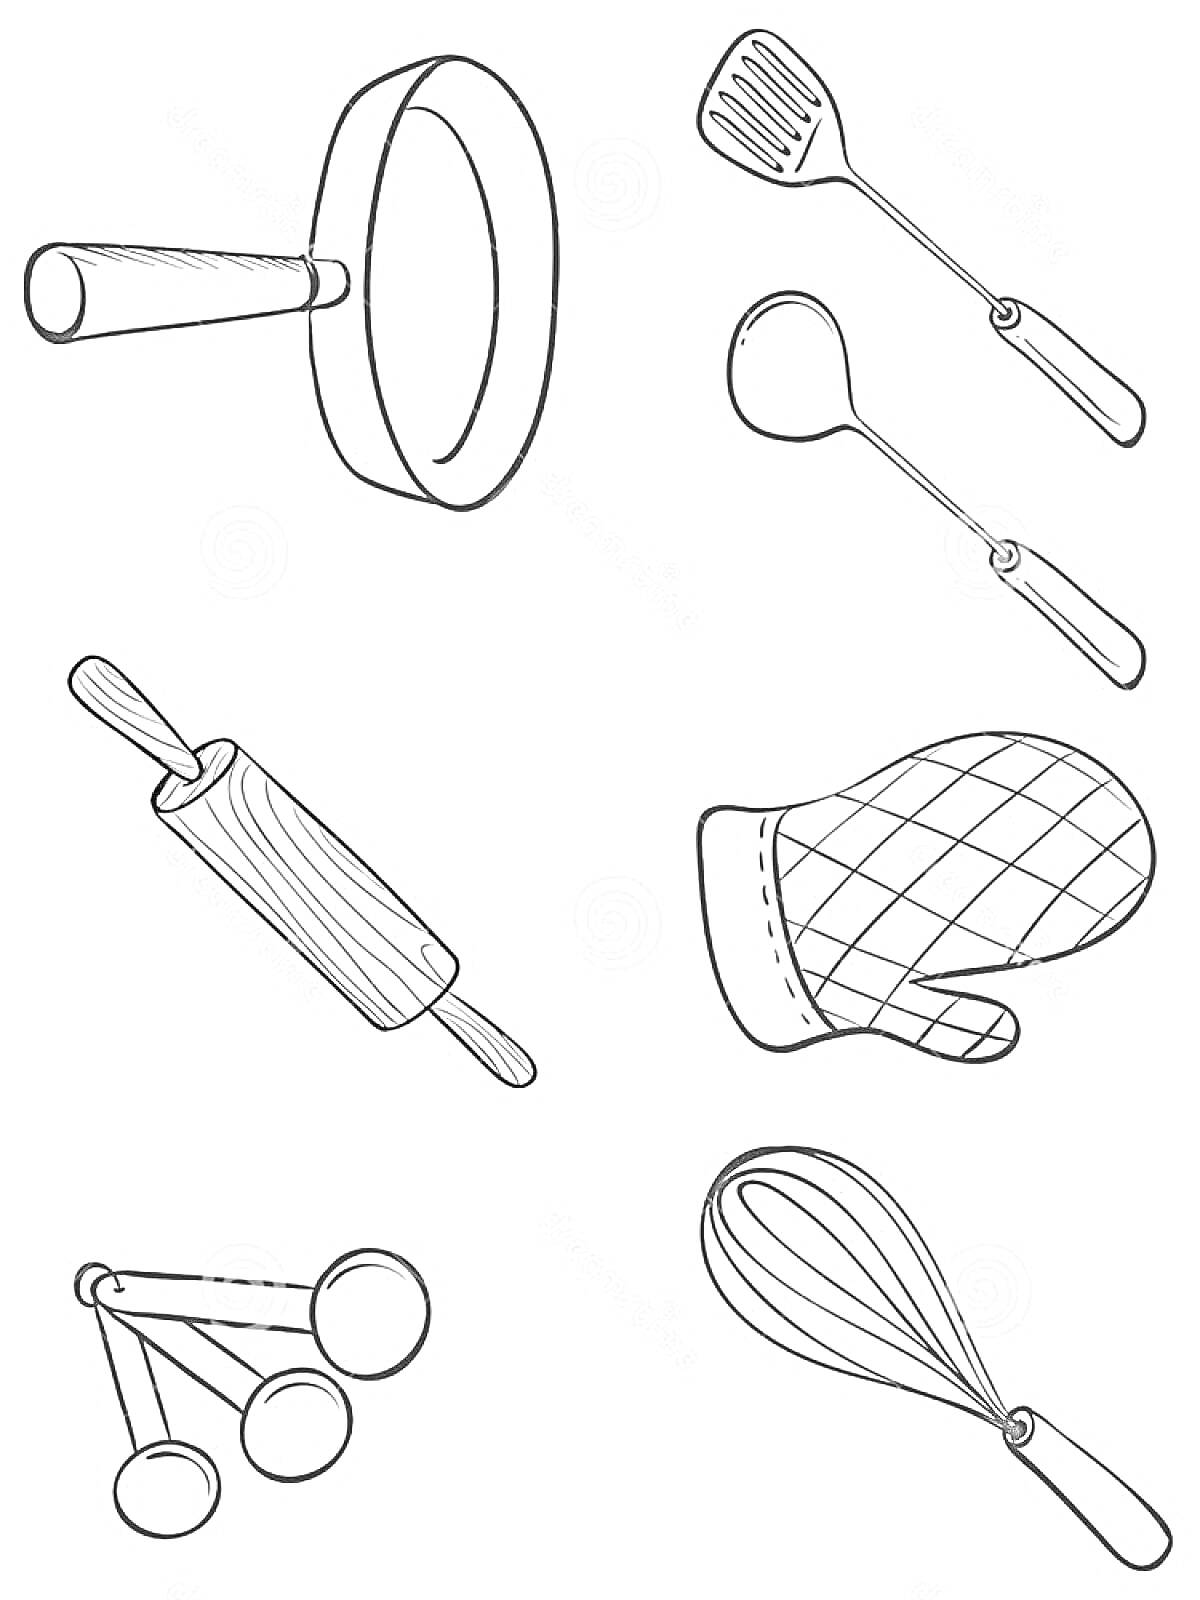 Кухонные принадлежности (сковорода, лопатка, половник, скалка, прихватка, мерные ложки, венчик)